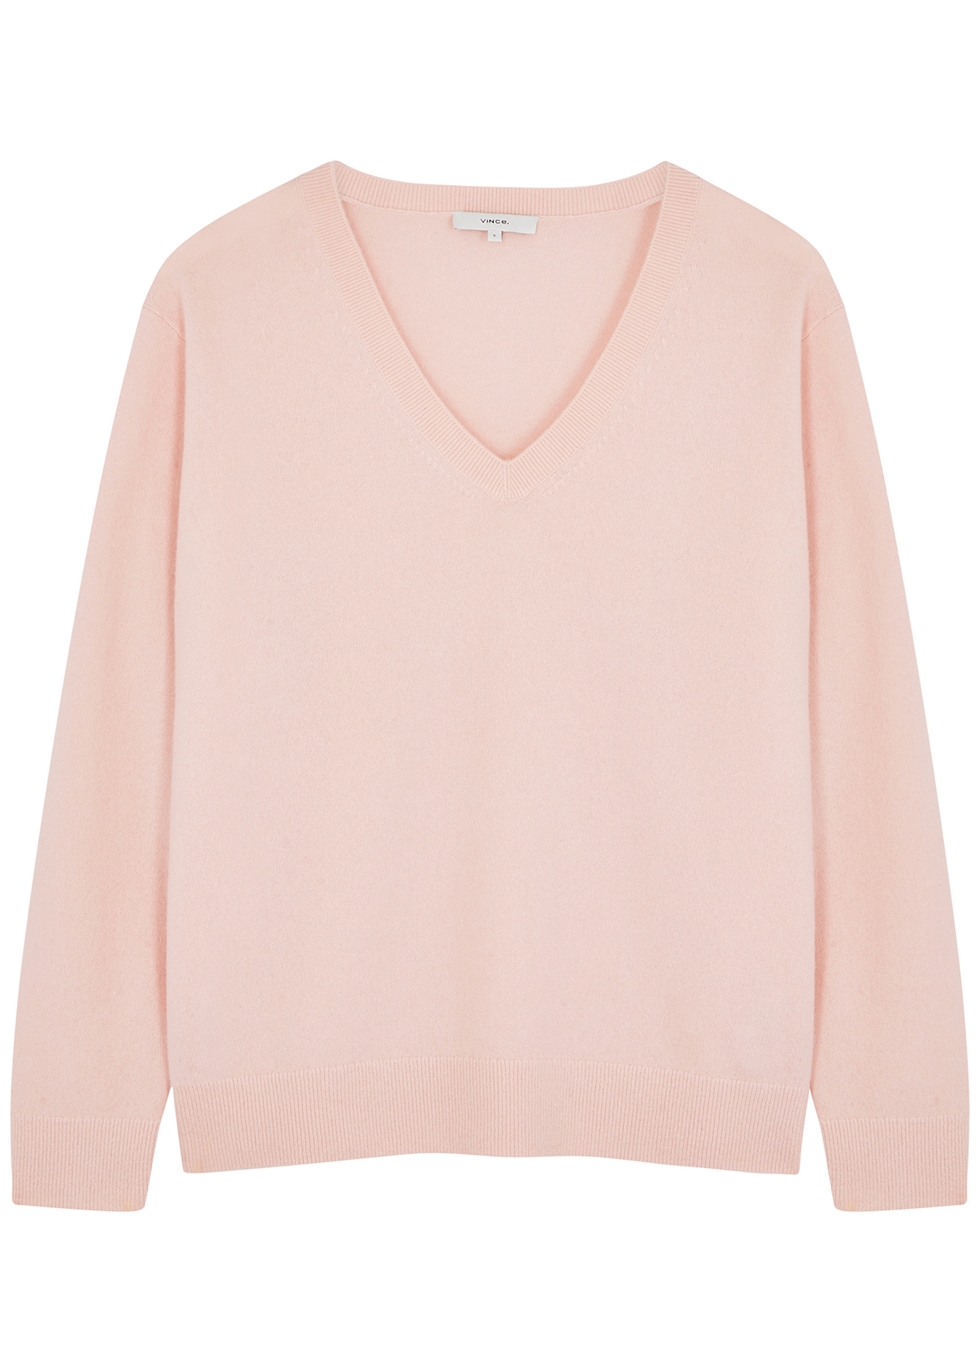 Light pink cashmere jumper